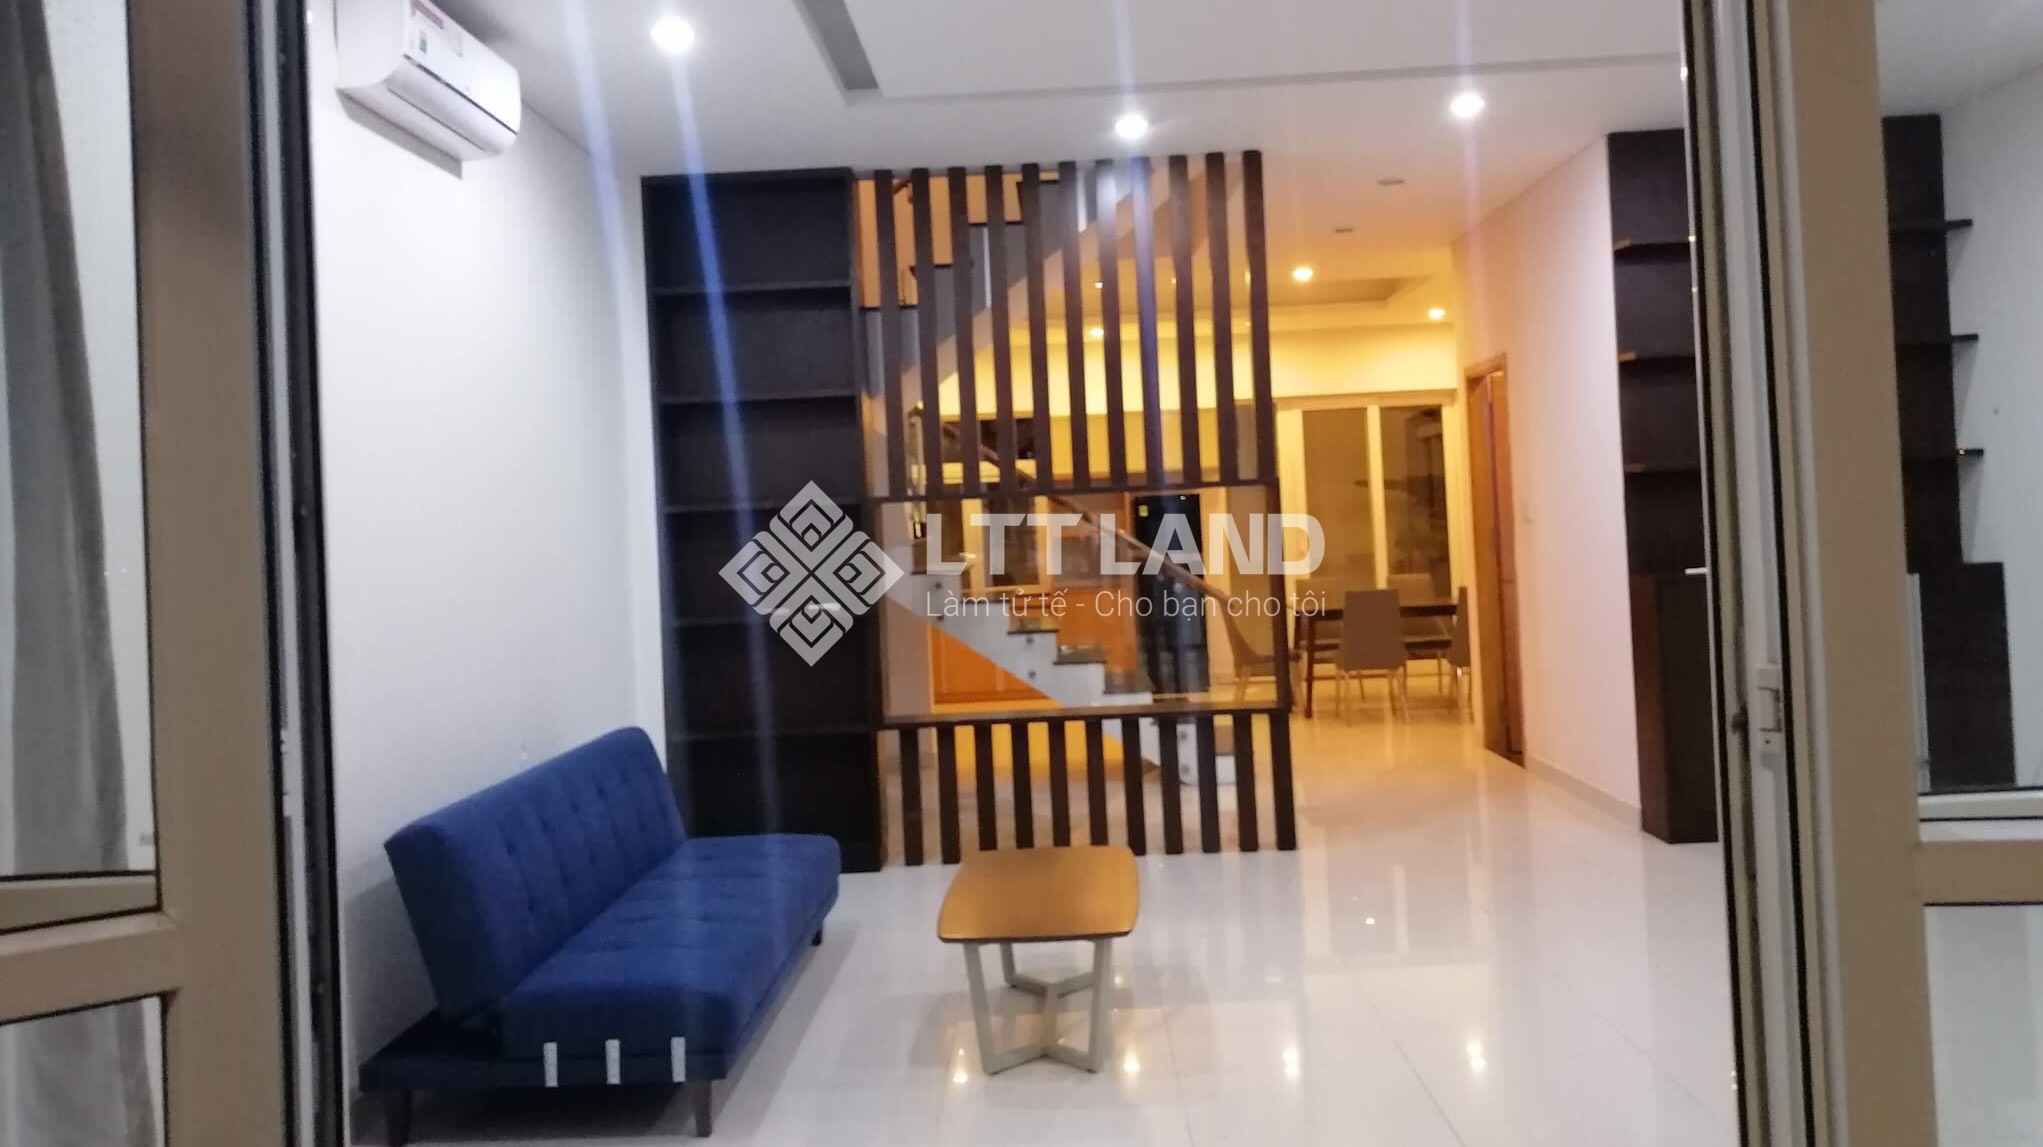 House for rent in FPT CITY DA NANG – LTTLAND